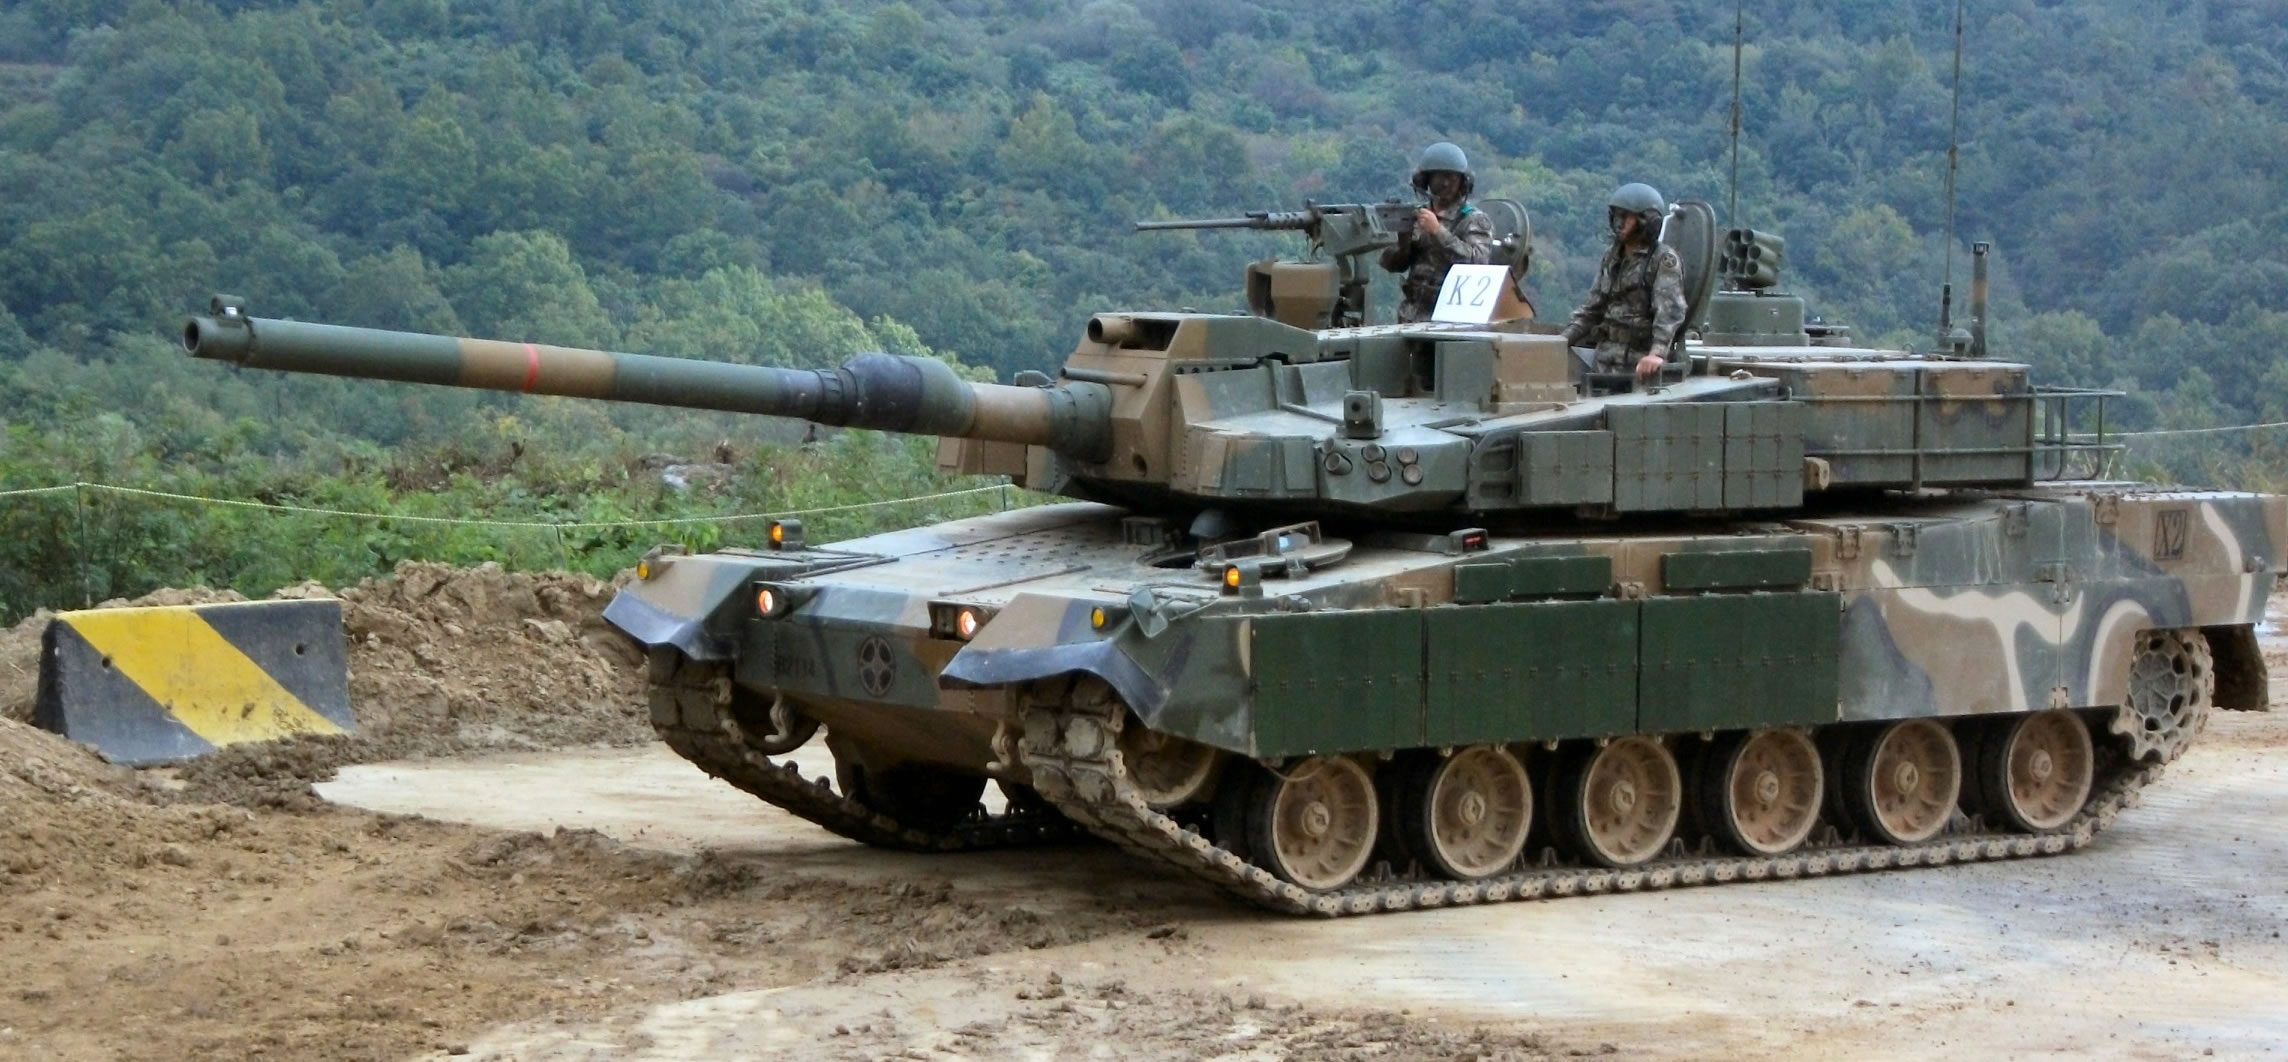 https://gagadget.com/media/uploads/K2-Black-Panther-Tank.jpg